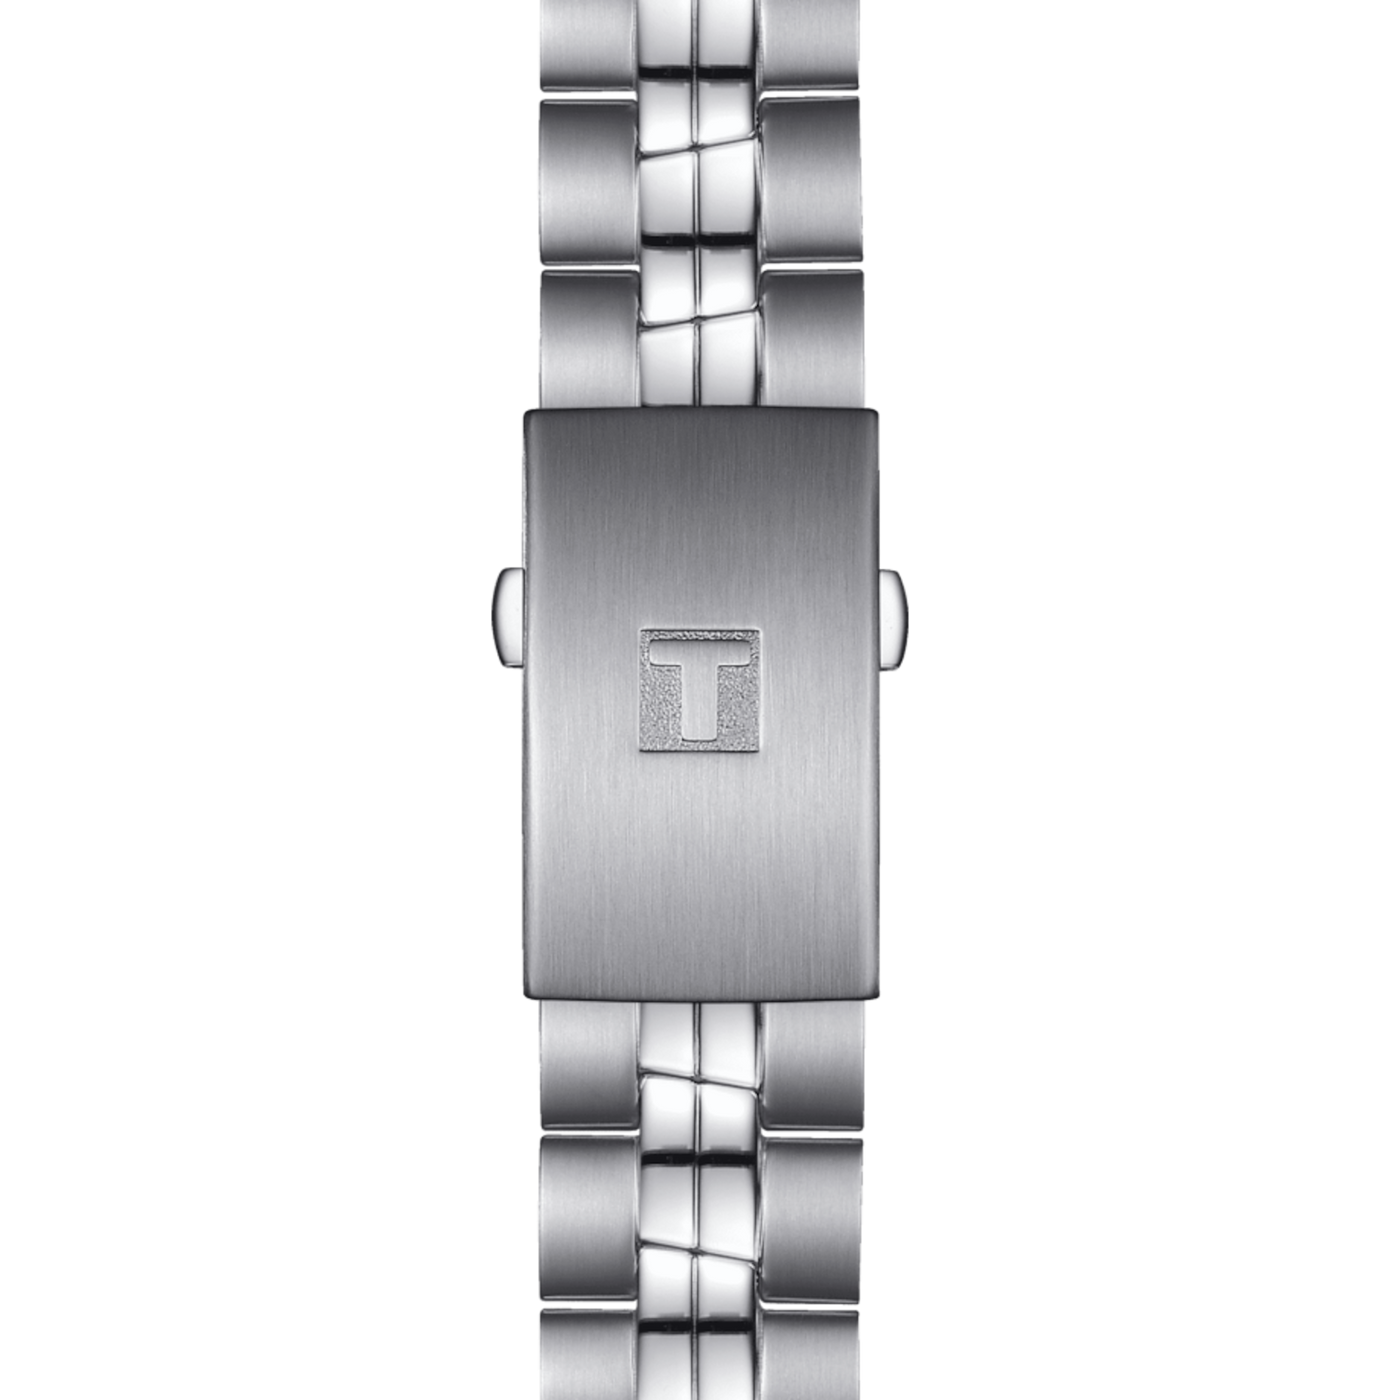 Tissot PR 100 Quartz Watch - T101.410.11.031.00